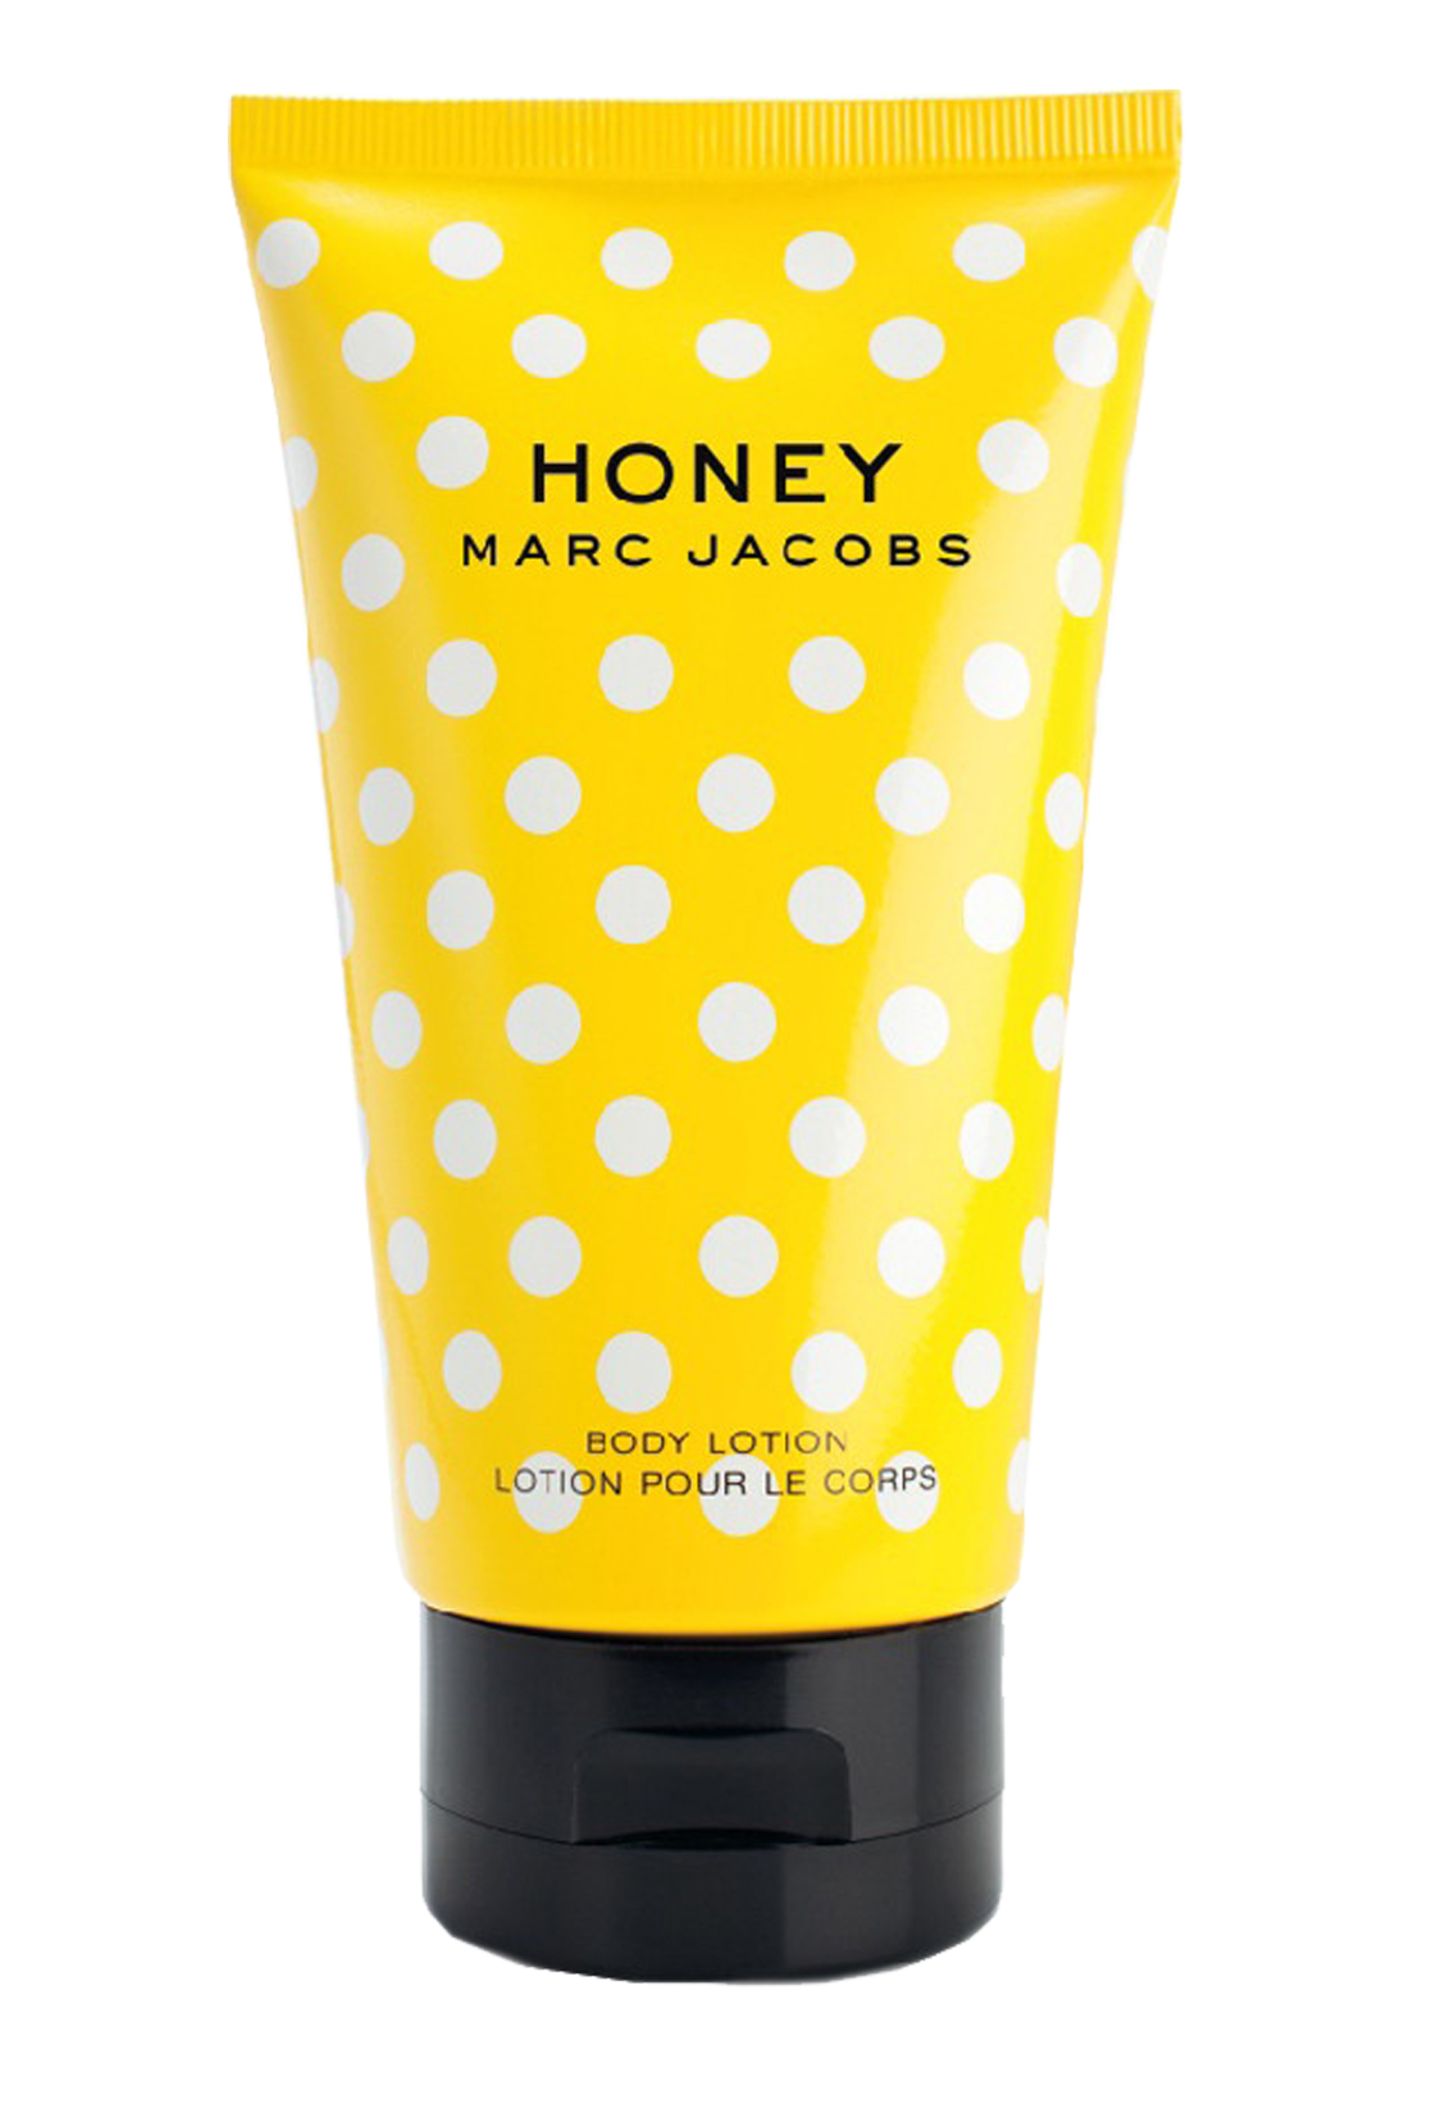 Die blumig-frische "Honey"-Bodylotion von Marc Jacobs macht gute Laune. 150 ml, ca. 35 Euro